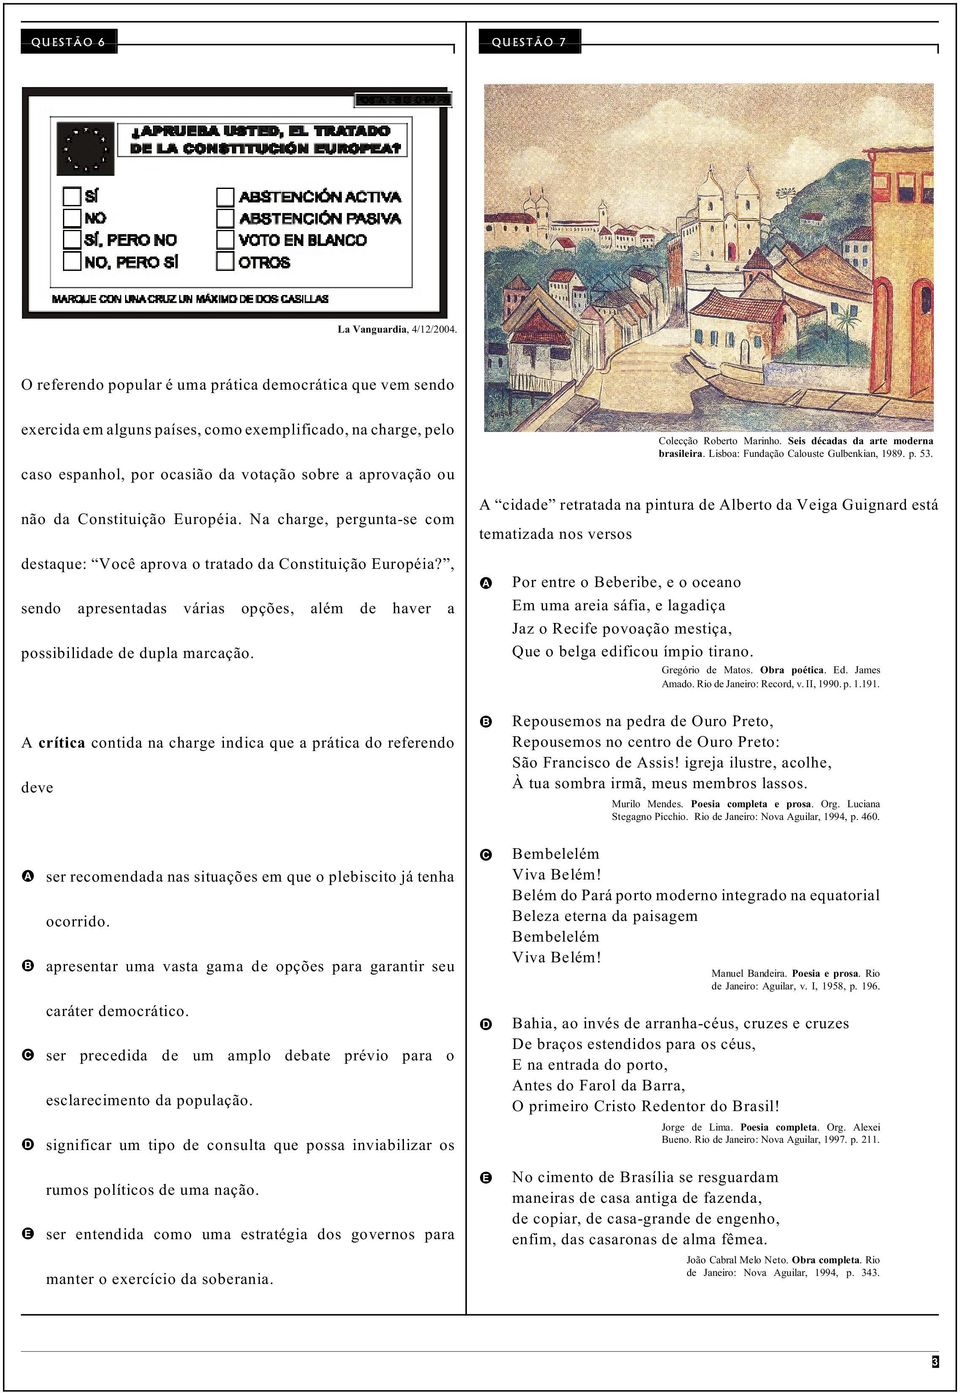 Lisboa: Fundação Calouste Gulbenkian, 1989. p. 53. caso espanhol, por ocasião da votação sobre a aprovação ou não da Constituição Européia.